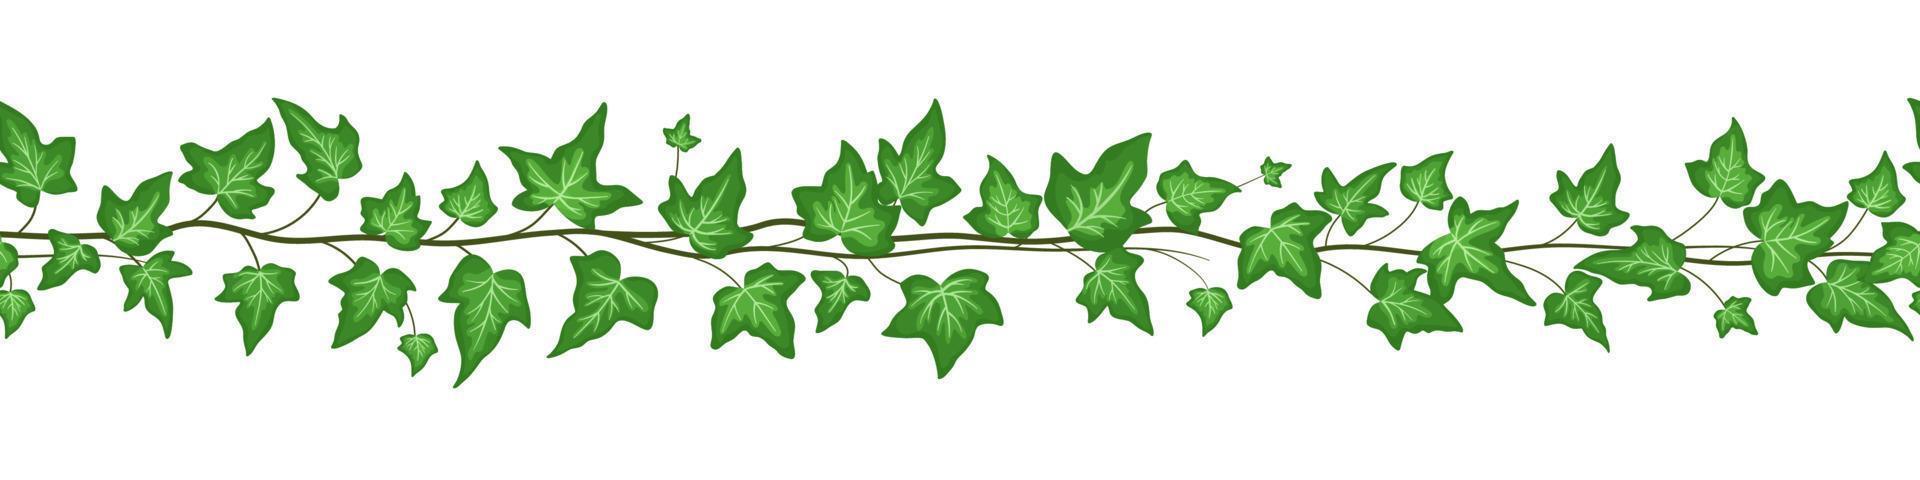 bordure transparente avec des feuilles de lierre vert isolé sur fond blanc. illustrations de dessin animé plat de vecteur. lierre grimpant vecteur